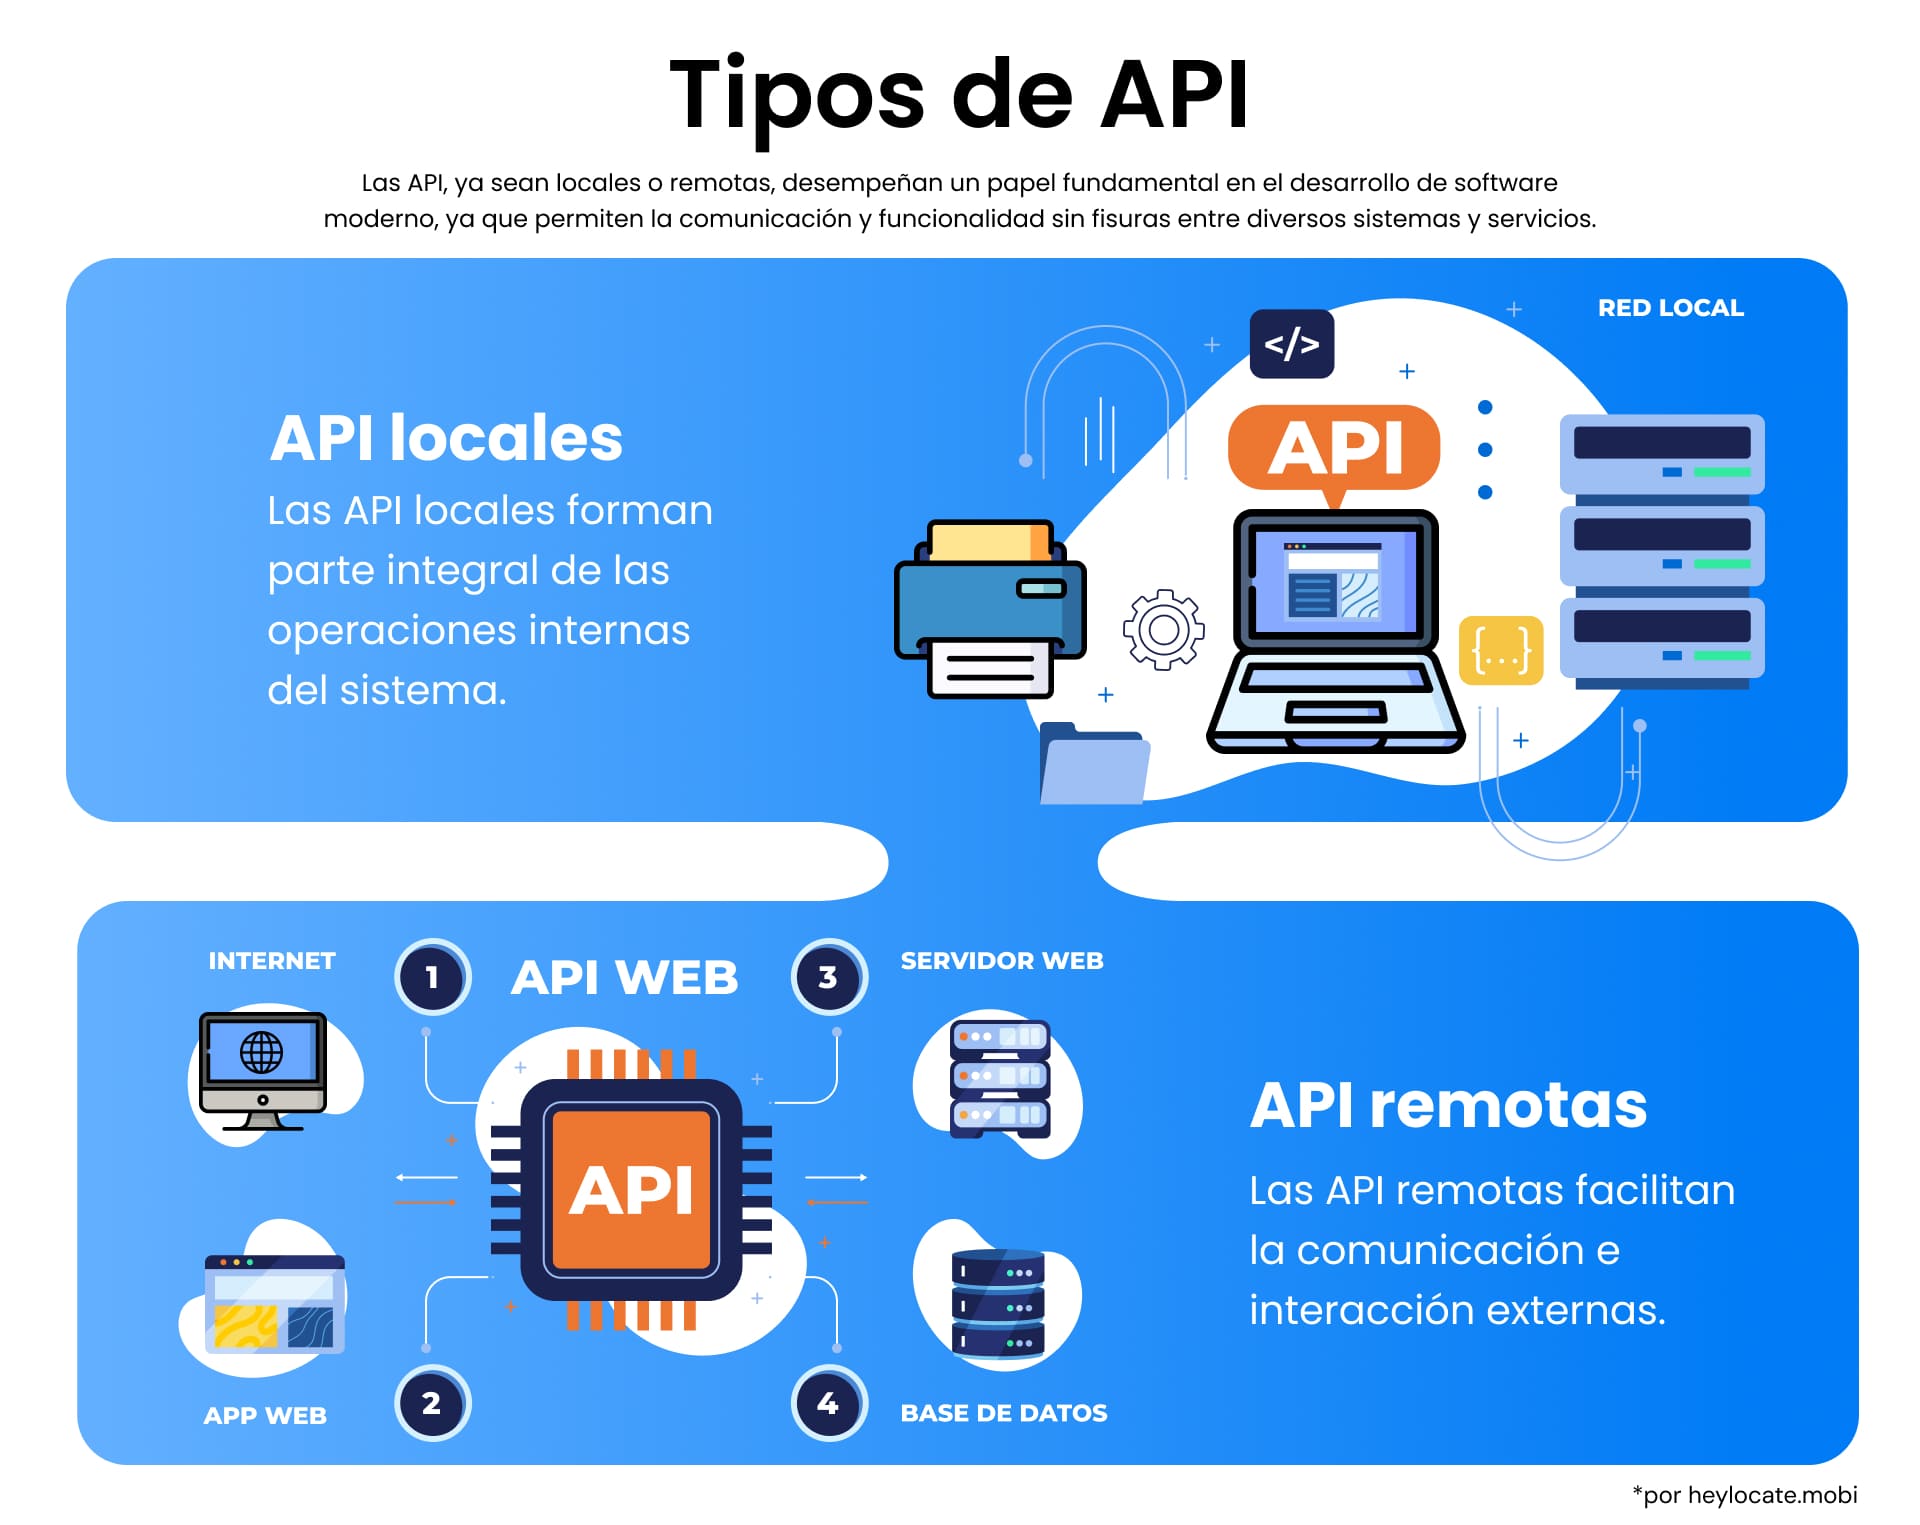 Gráfico educativo que muestra dos tipos de APIs: APIs Locales, que son esenciales para las operaciones internas del sistema y APIs Remotas, que permiten la comunicación externa